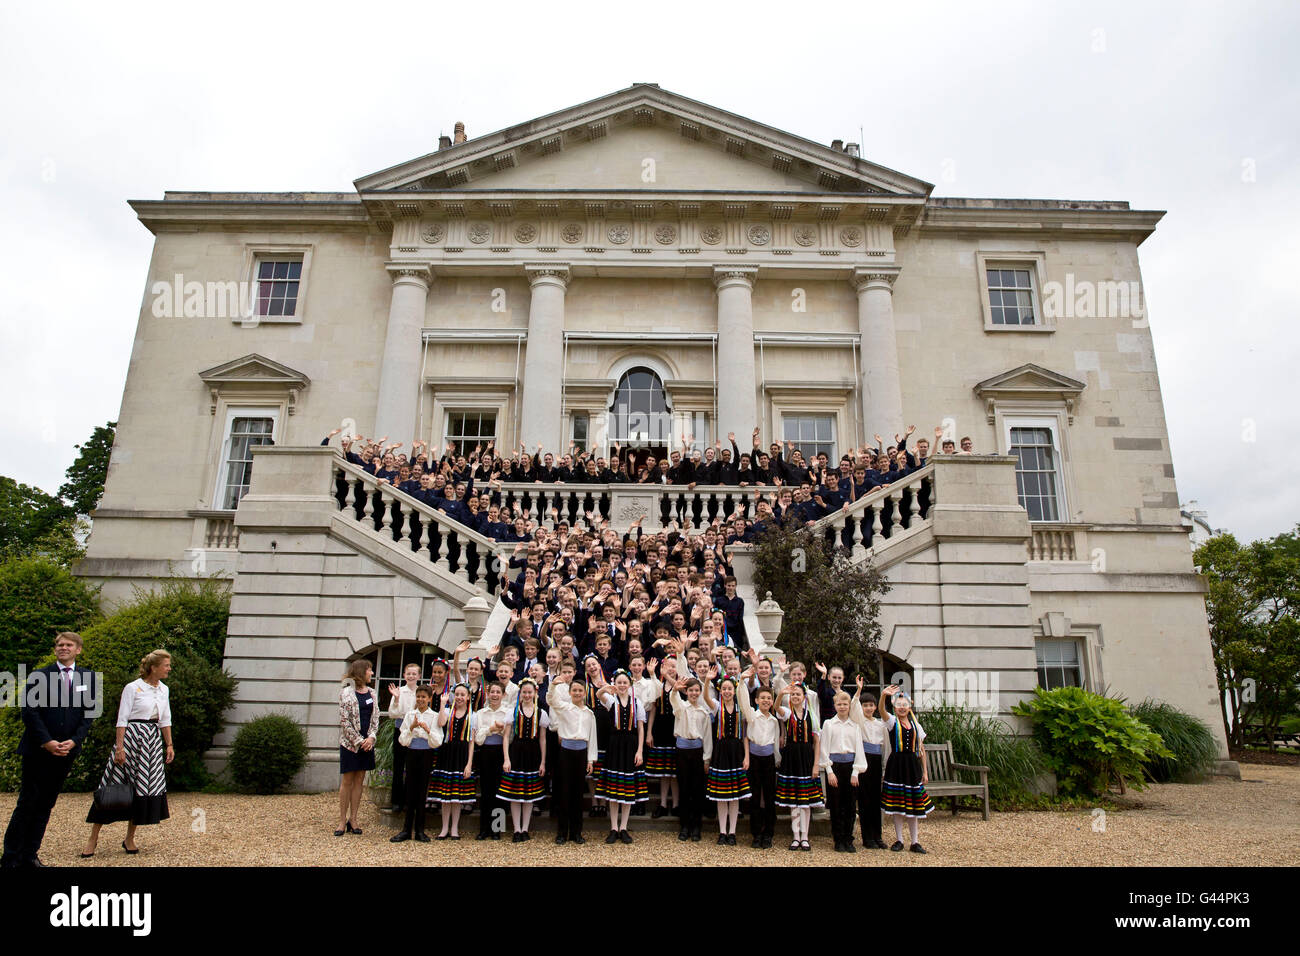 Vague d'étudiants lors d'une photo de groupe lors d'une visite par le Prince de Galles à la Royal Ballet School, White Lodge campus à Richmond Park, au sud ouest de Londres. Banque D'Images